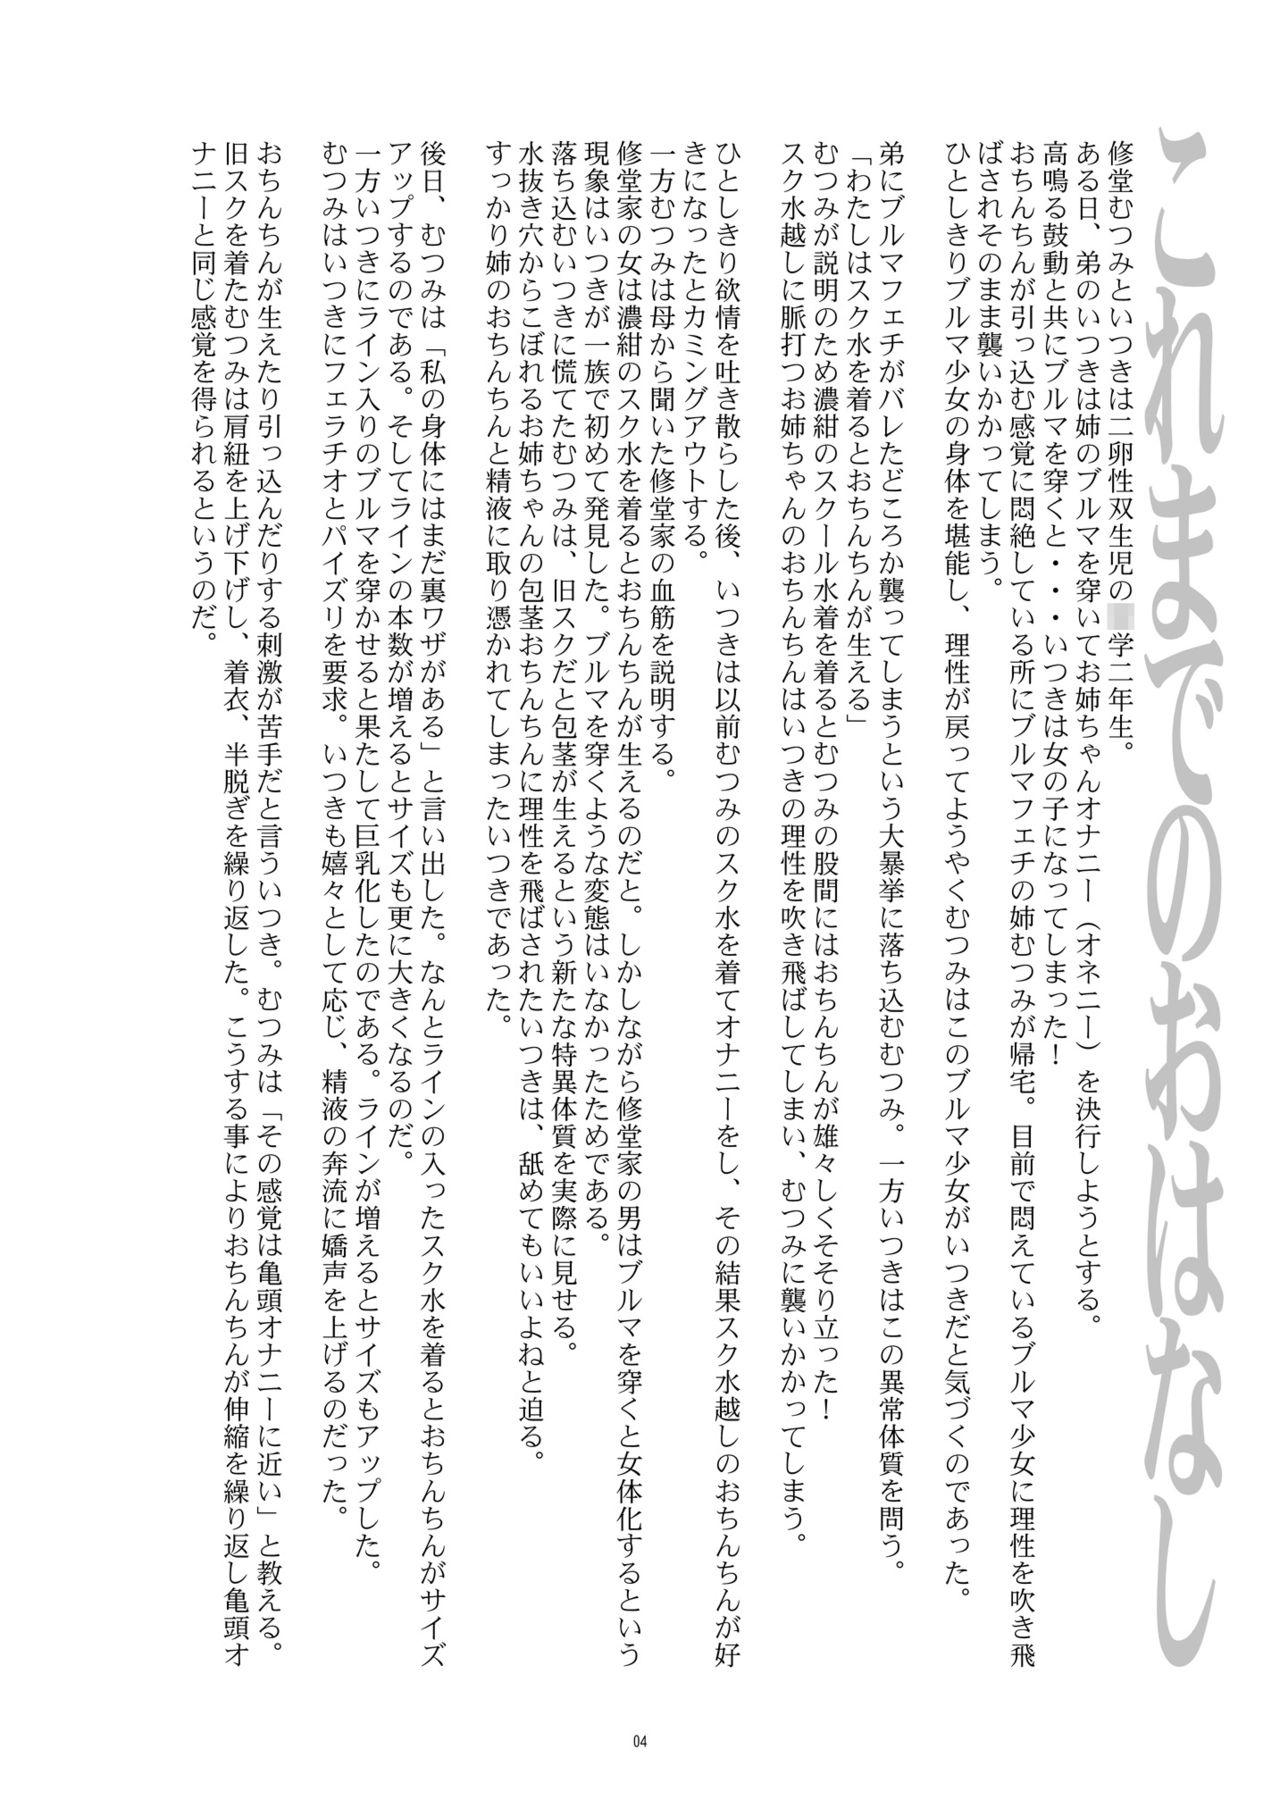 Flaquita Hentai Futago 9 - Original Erotica - Page 4